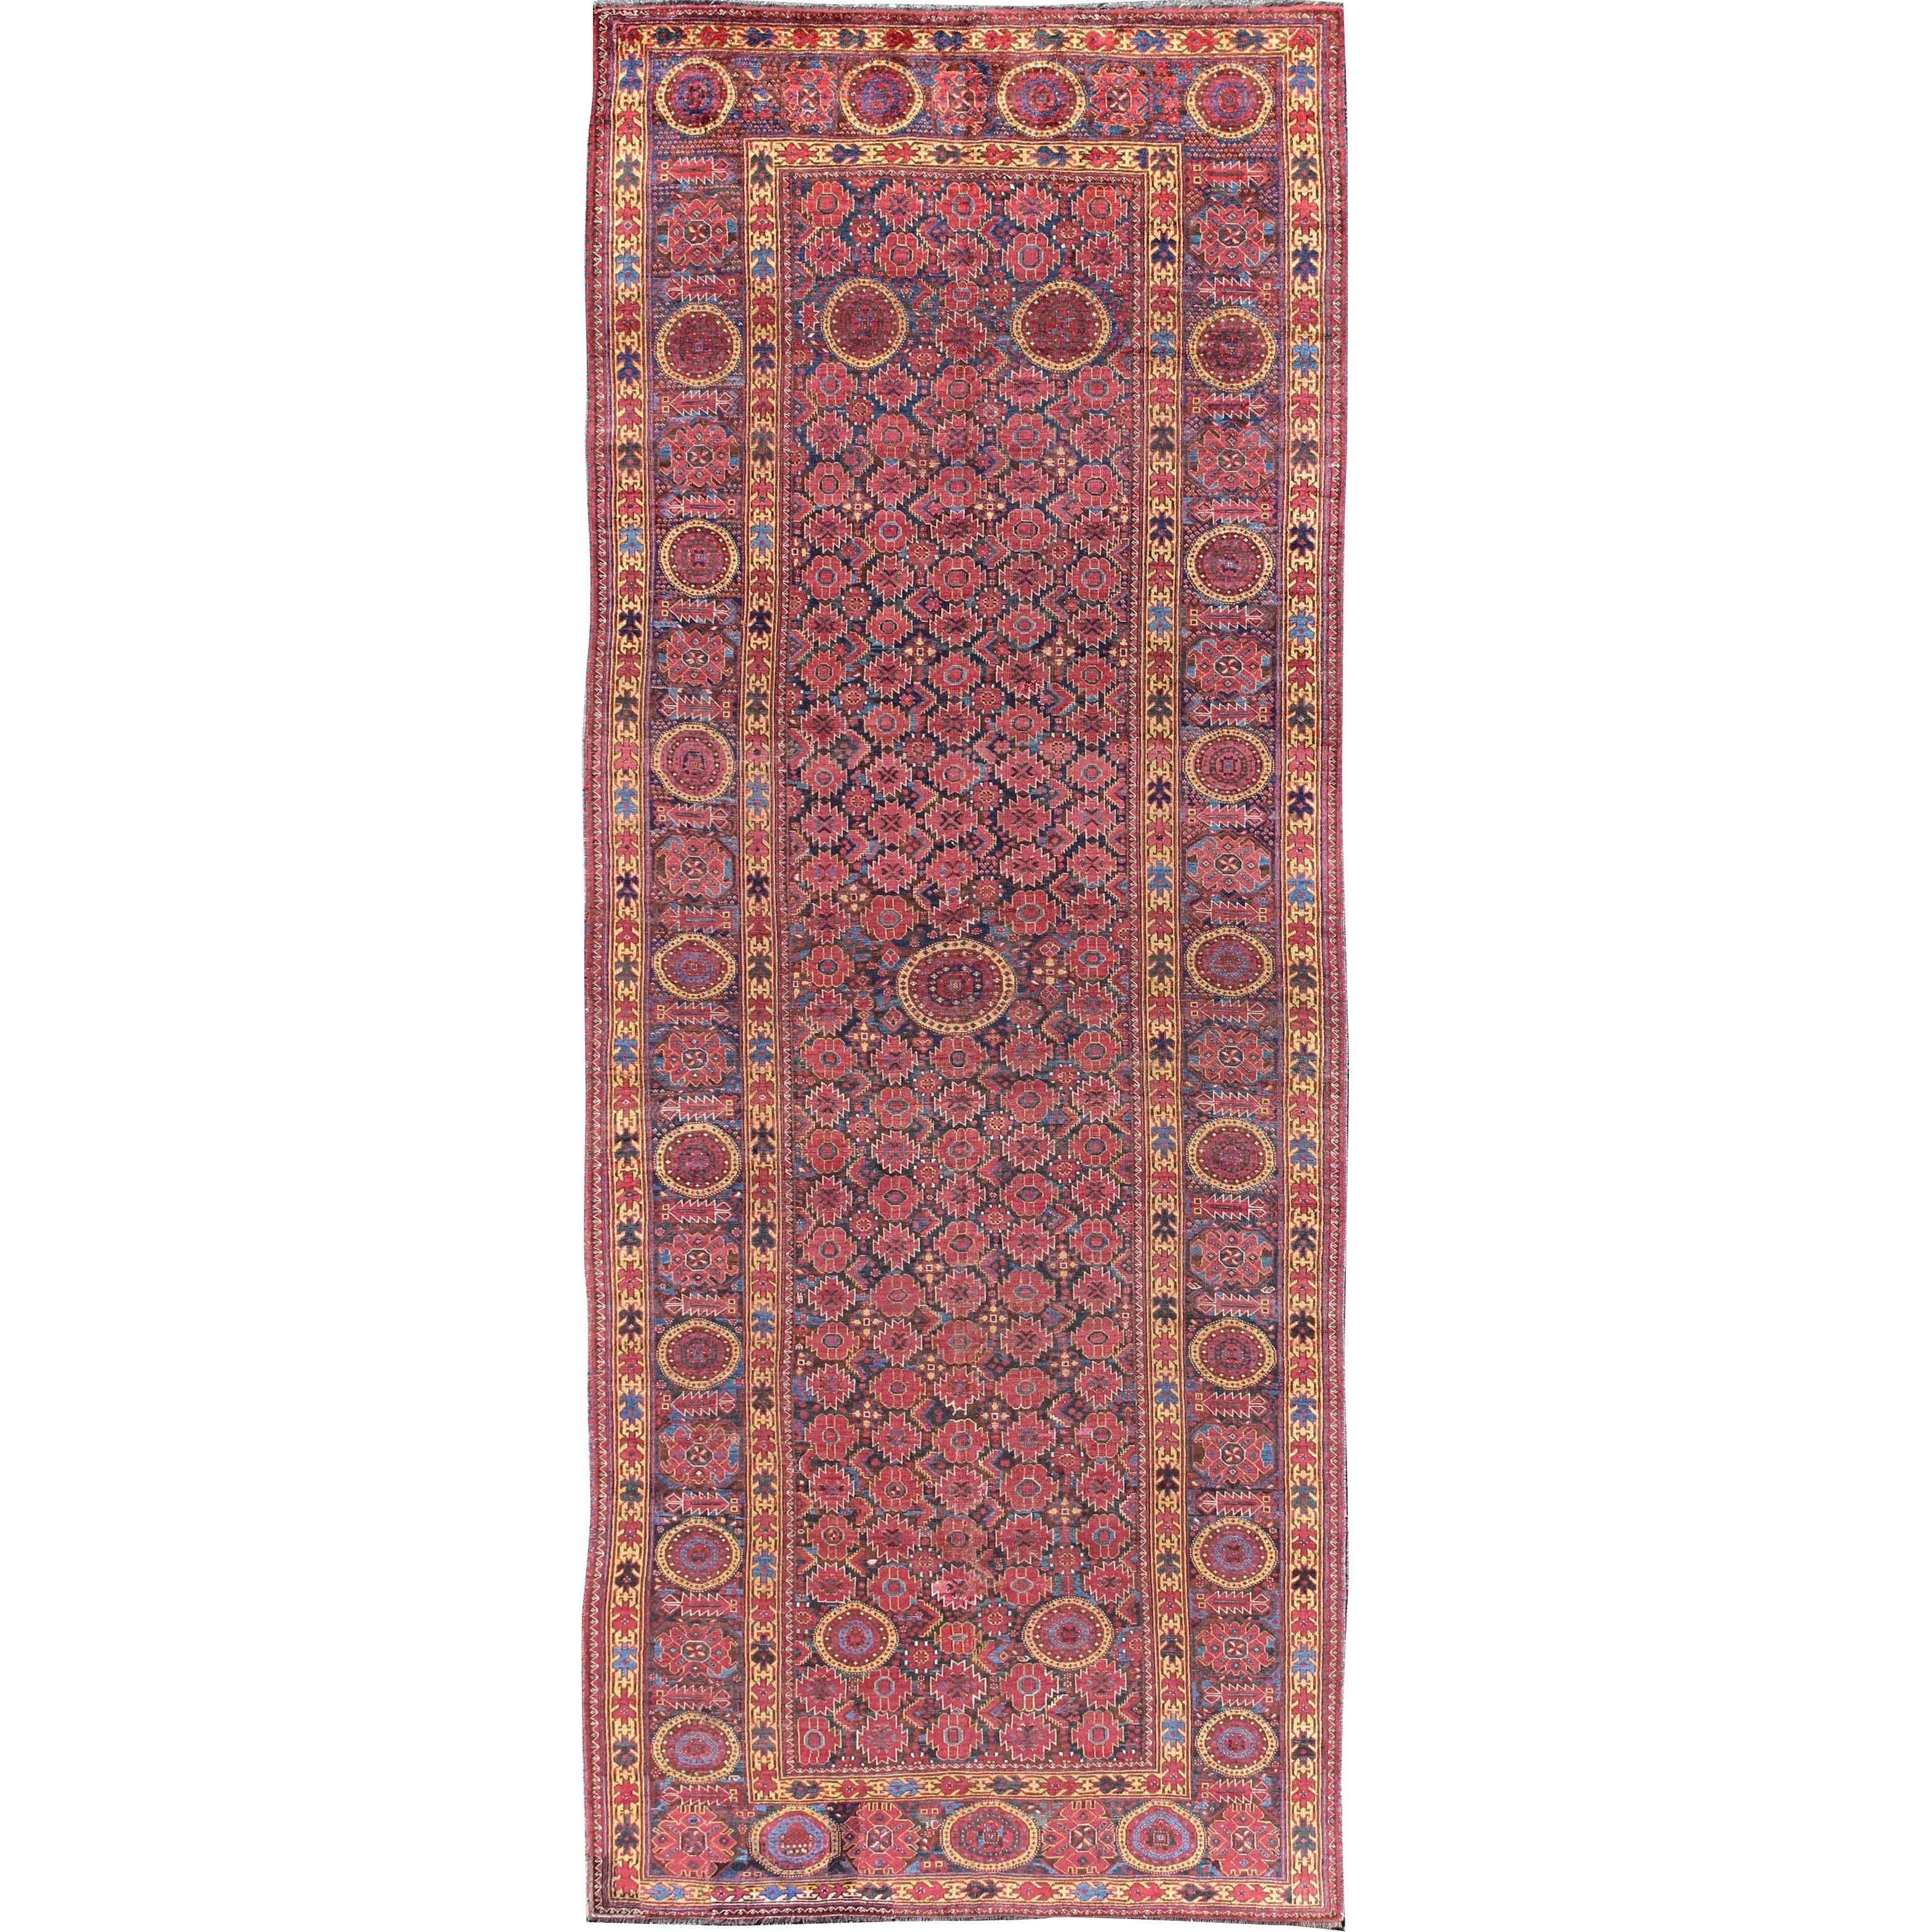 Antiker Beshir langer Galerieteppich aus dem 19. Jahrhundert in einzigartigen Farben, 19. Jahrhundert